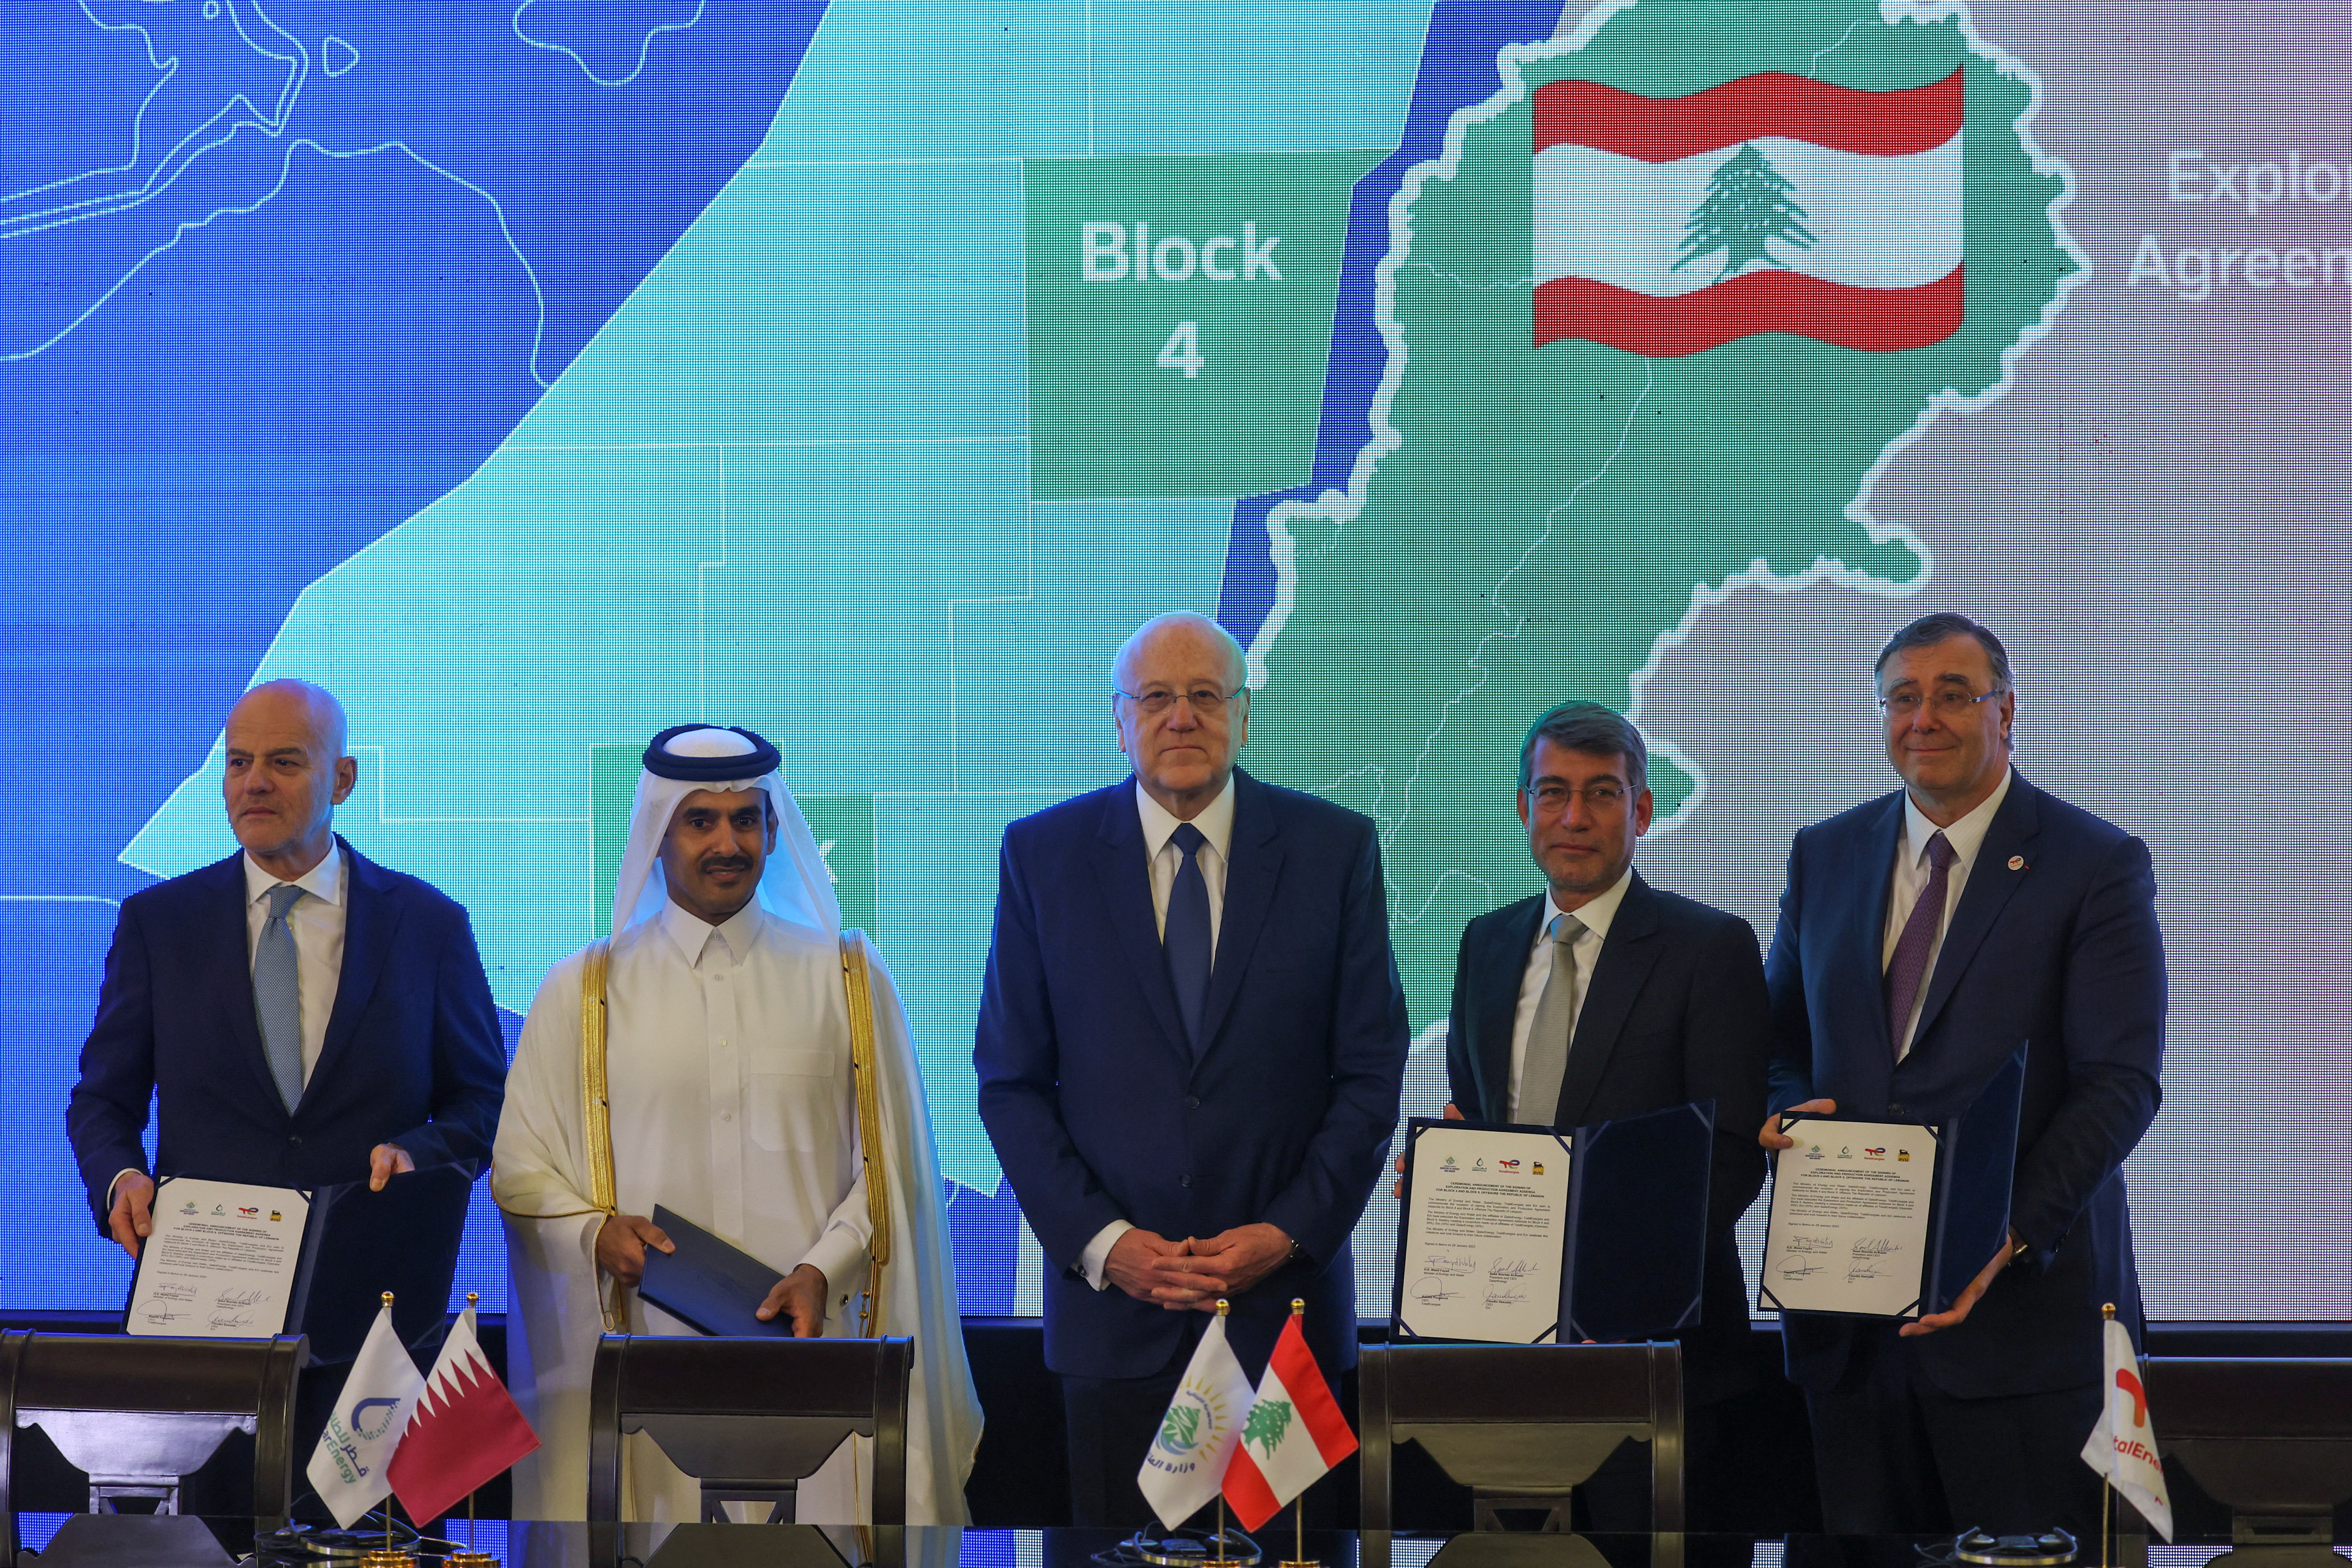 Gaz offshore au Liban : le Qatar remplace Novatek et devient partenaire de TotalEnergies et ENI